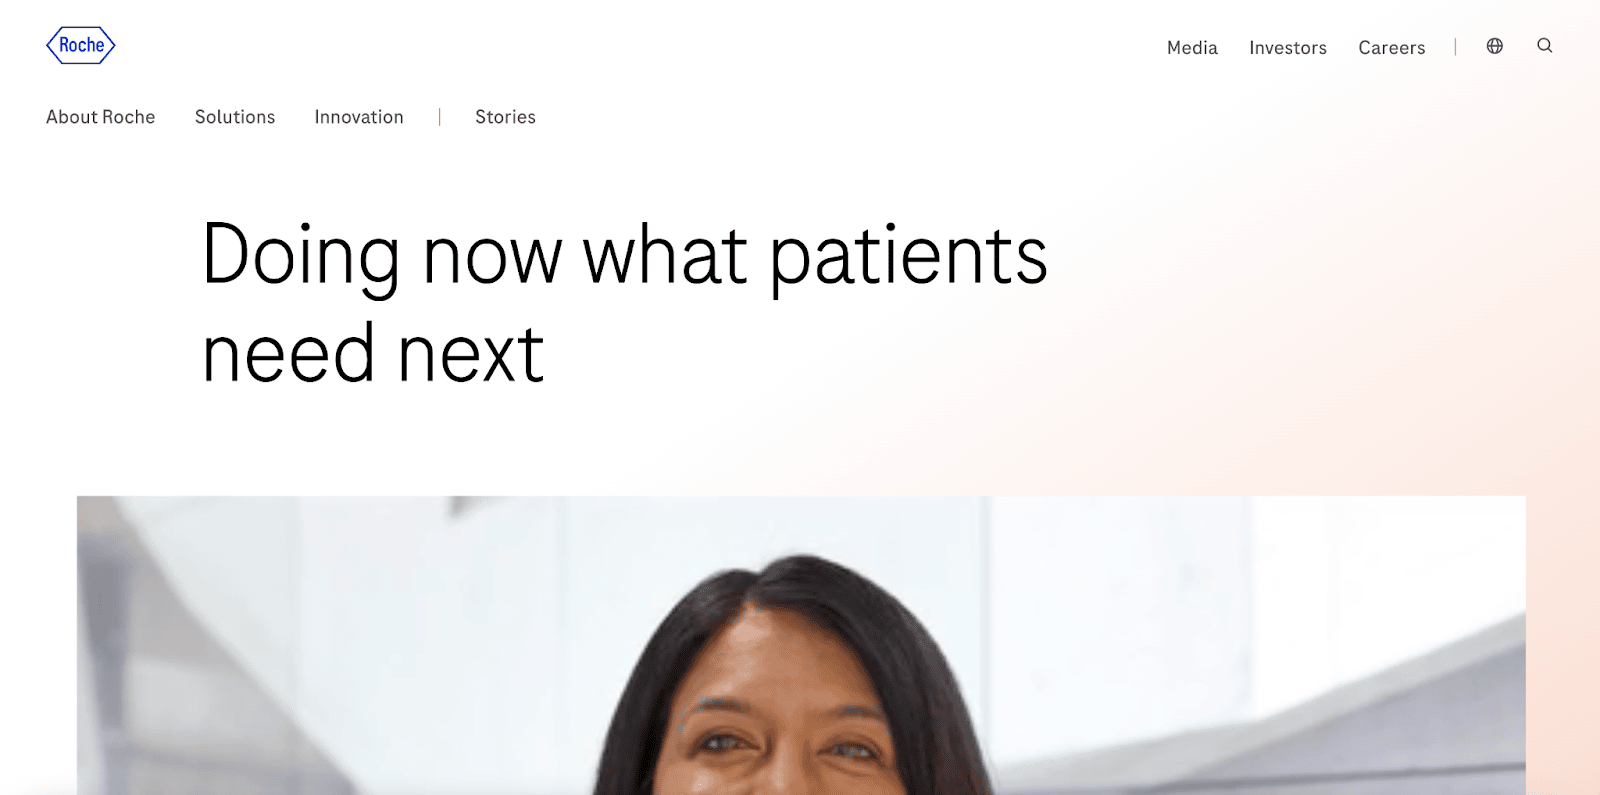 Ein Screenshot zeigt die offizielle Homepage von Roche mit dem Text "Doing now what patients need next" und einem Foto einer lächelnden Frau.